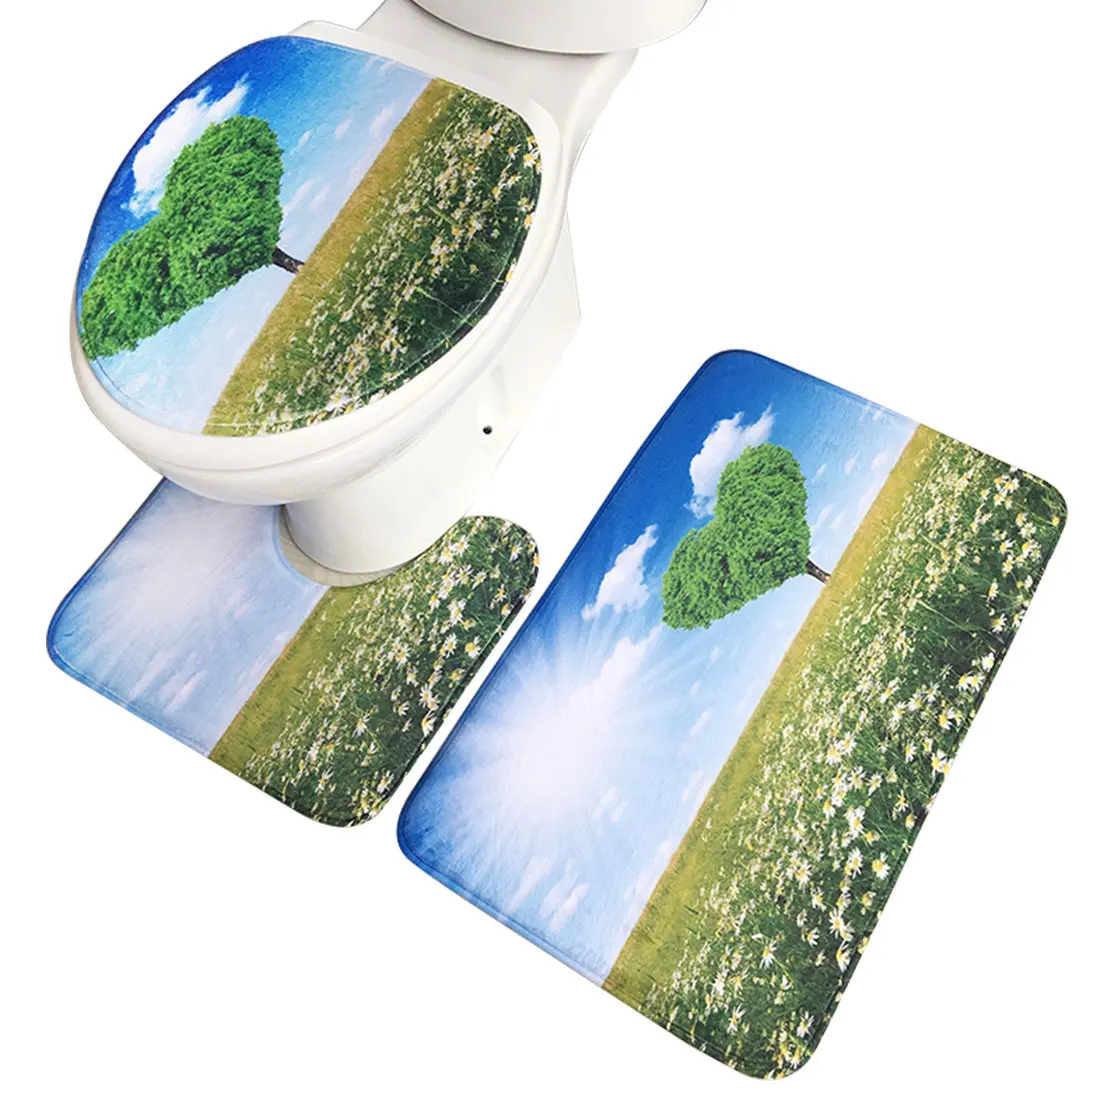 Коврик фланелевый набор с принтом для ванной коврик для ванной впитывающий Противоскользящий базовый Ковер Крышка для унитаза крышка для туалета Прачечная - Цвет: 13